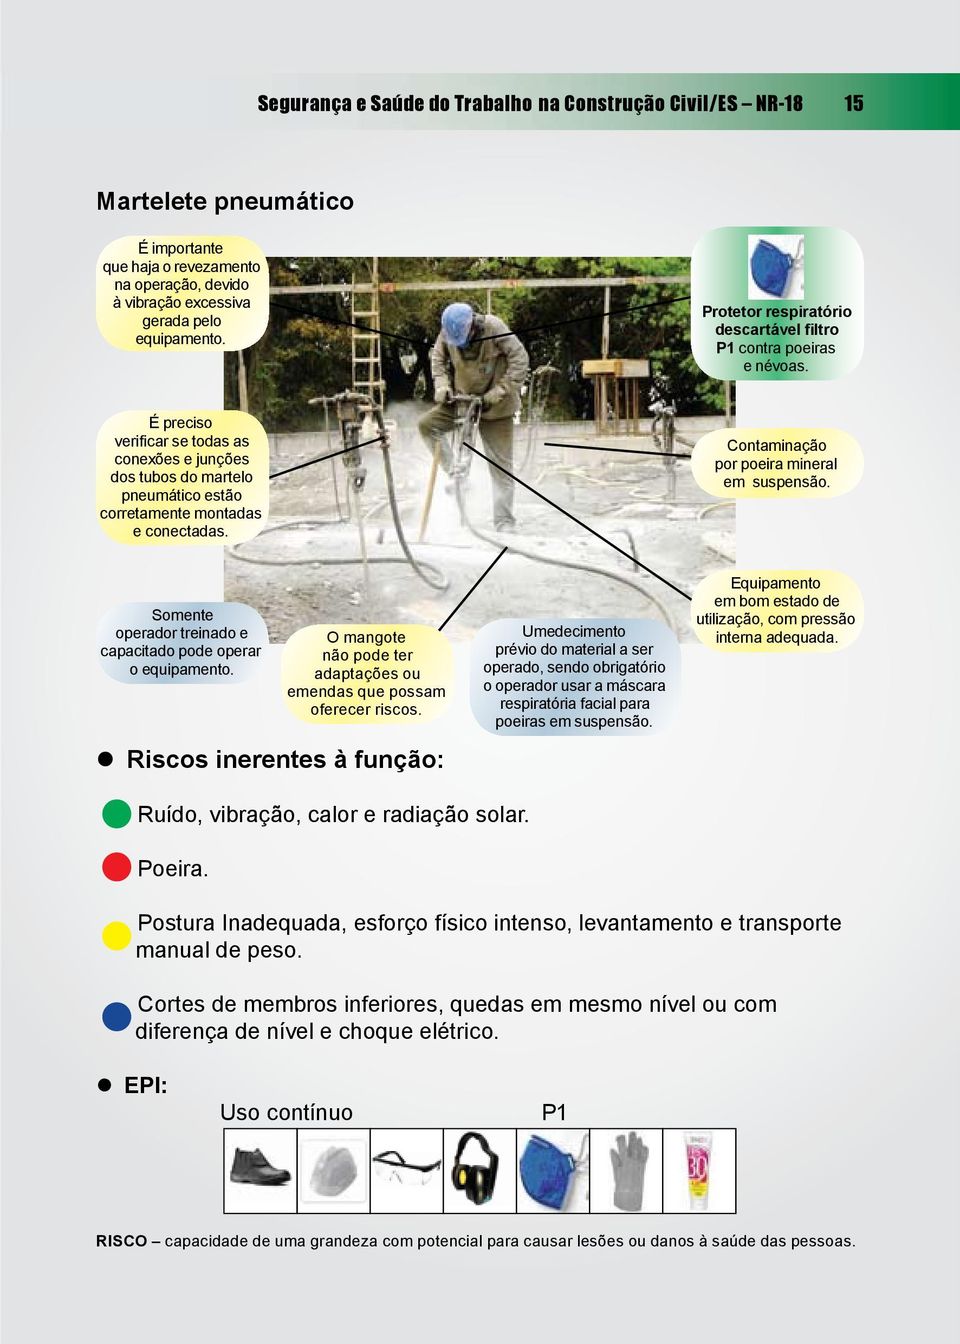 Contaminação por poeira mineral em suspensão. Somente operador treinado e capacitado pode operar o equipamento. O mangote não pode ter adaptações ou emendas que possam oferecer riscos.